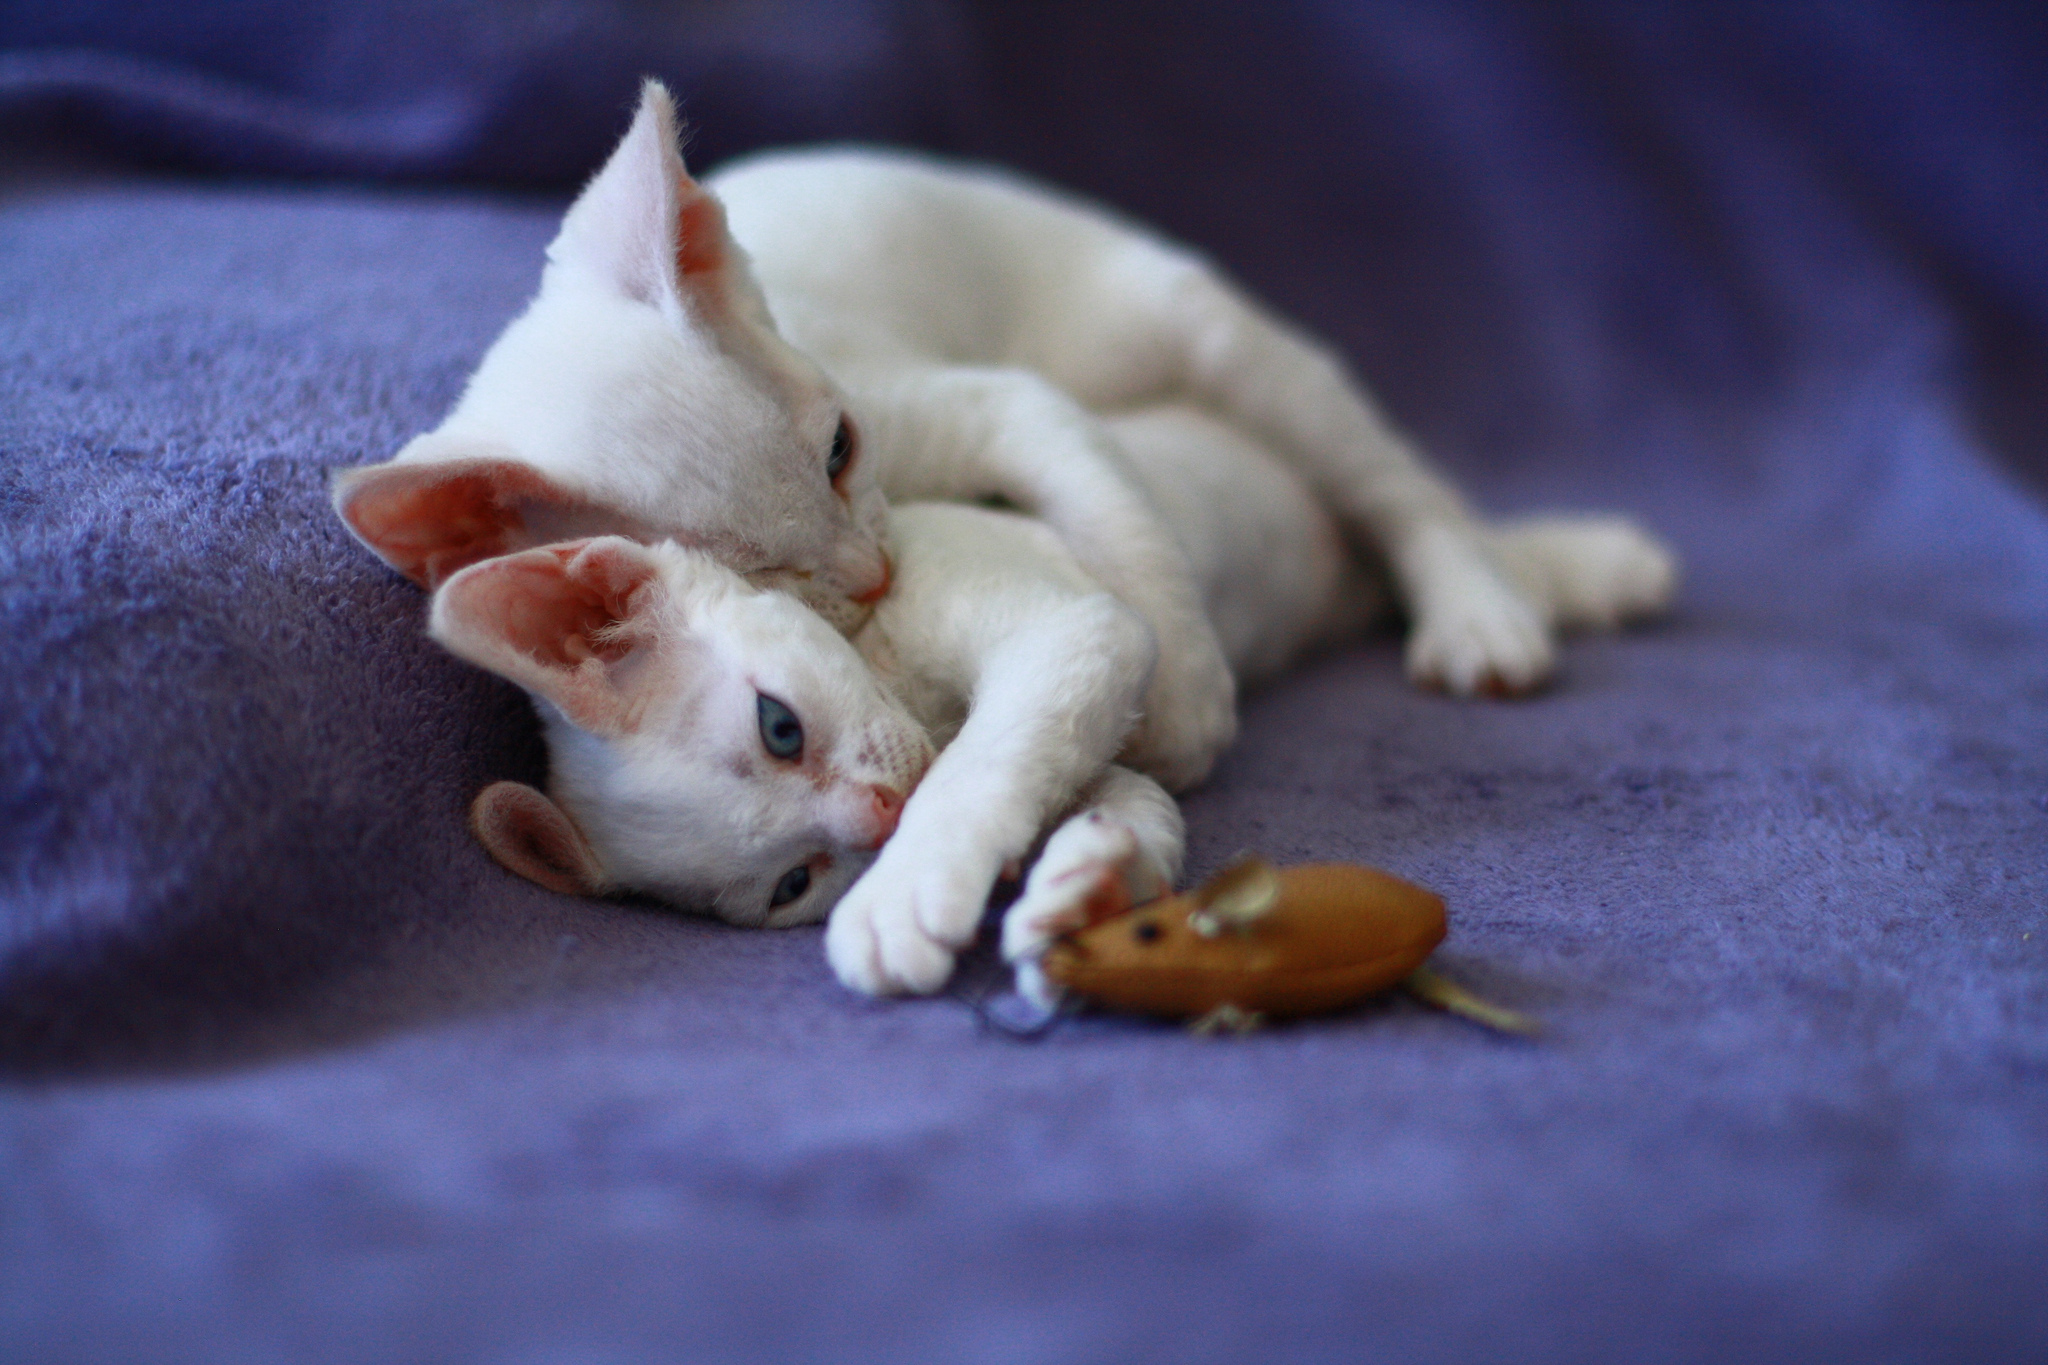 White Devon Rex kittens e bapala